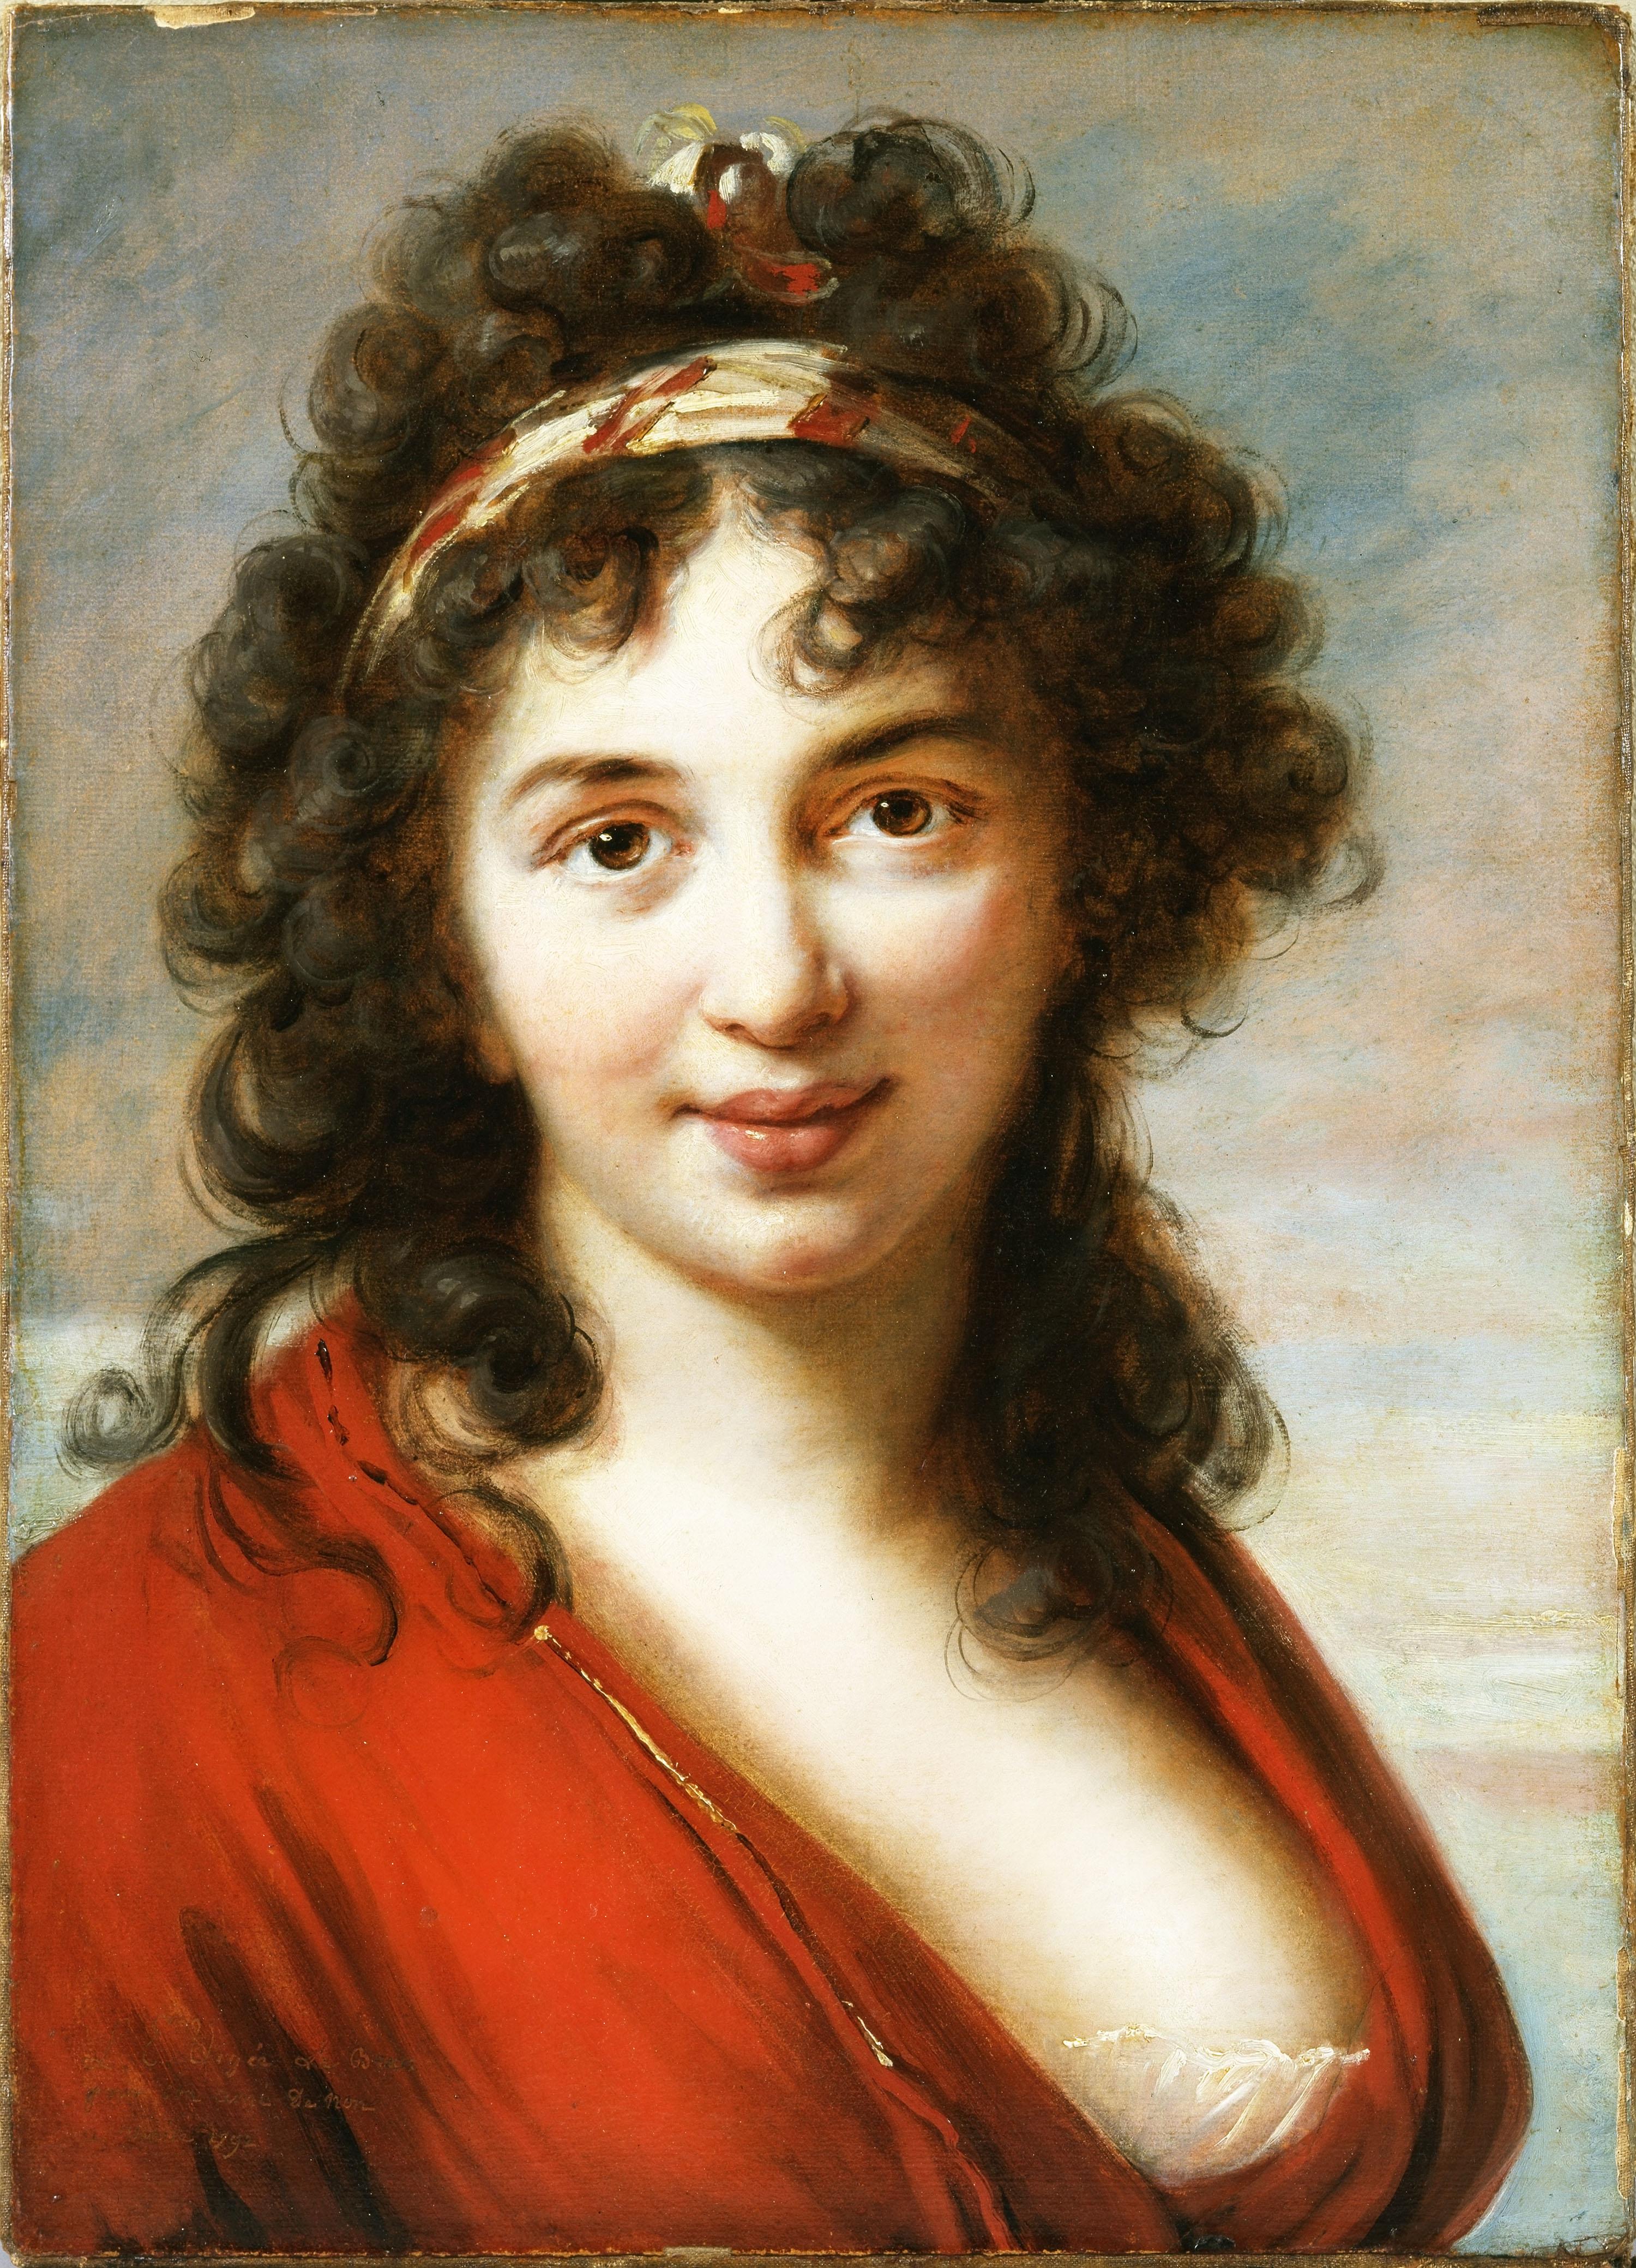 伊莎贝拉·特奥托奇·马里尼 Isabella Teotochi Marini by 伊丽莎白· 维吉·勒·布伦 - 1792 - 48.3 × 35.2 厘米 